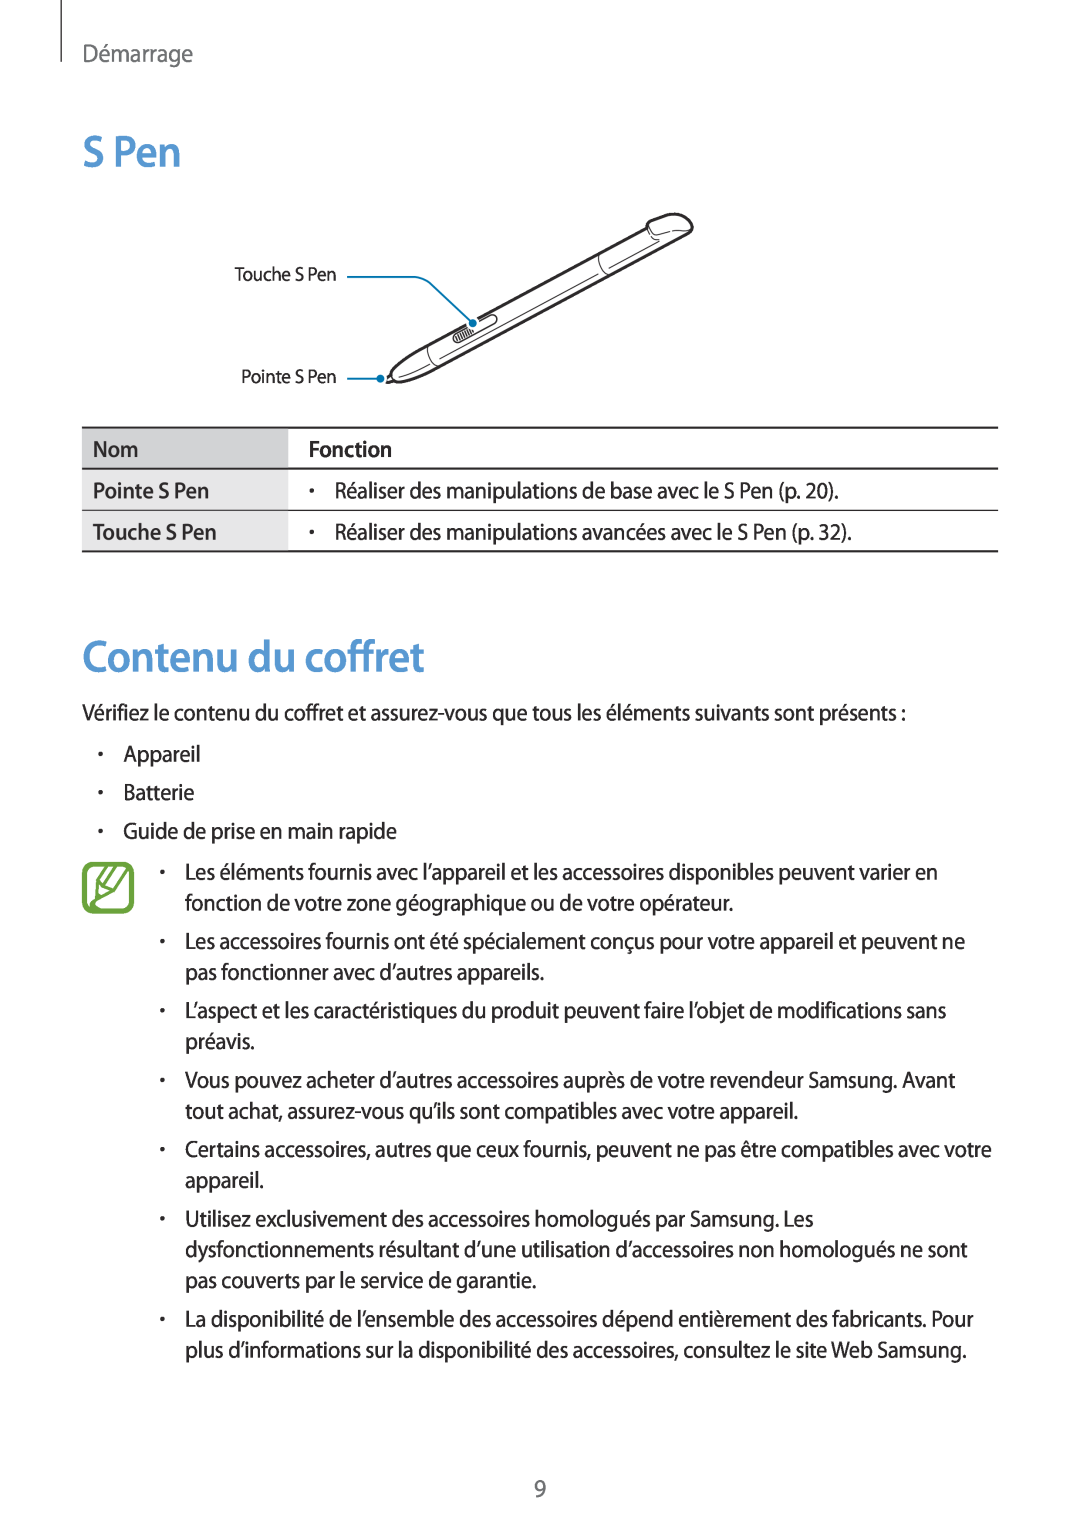 Samsung GT-N7105TADSFR Contenu du coffret, Pointe S Pen, Réaliser des manipulations de base avec le S Pen p, Démarrage 